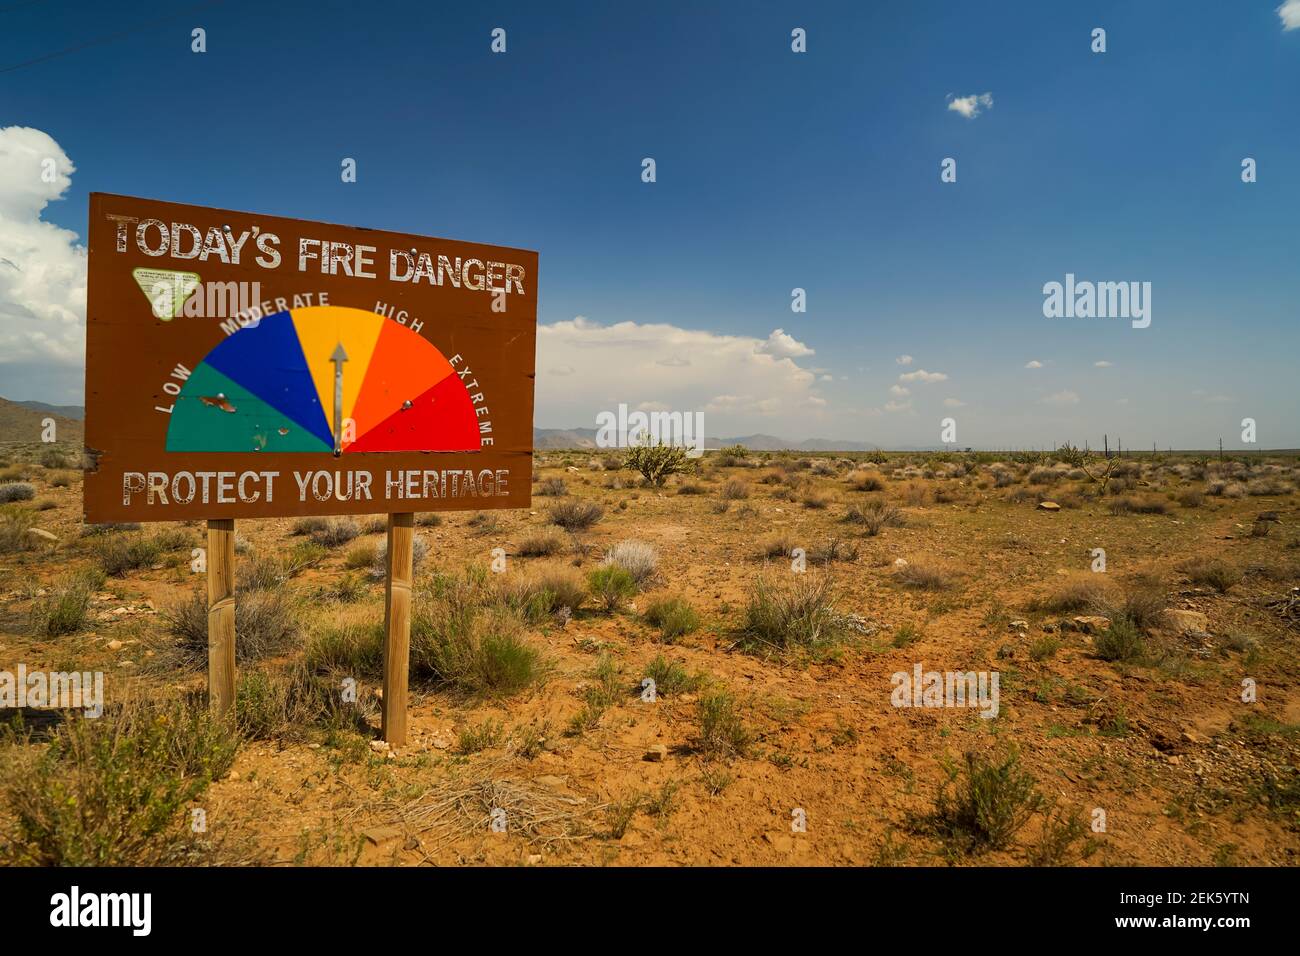 Warning sign for fire danger in the southwest US desert Stock Photo